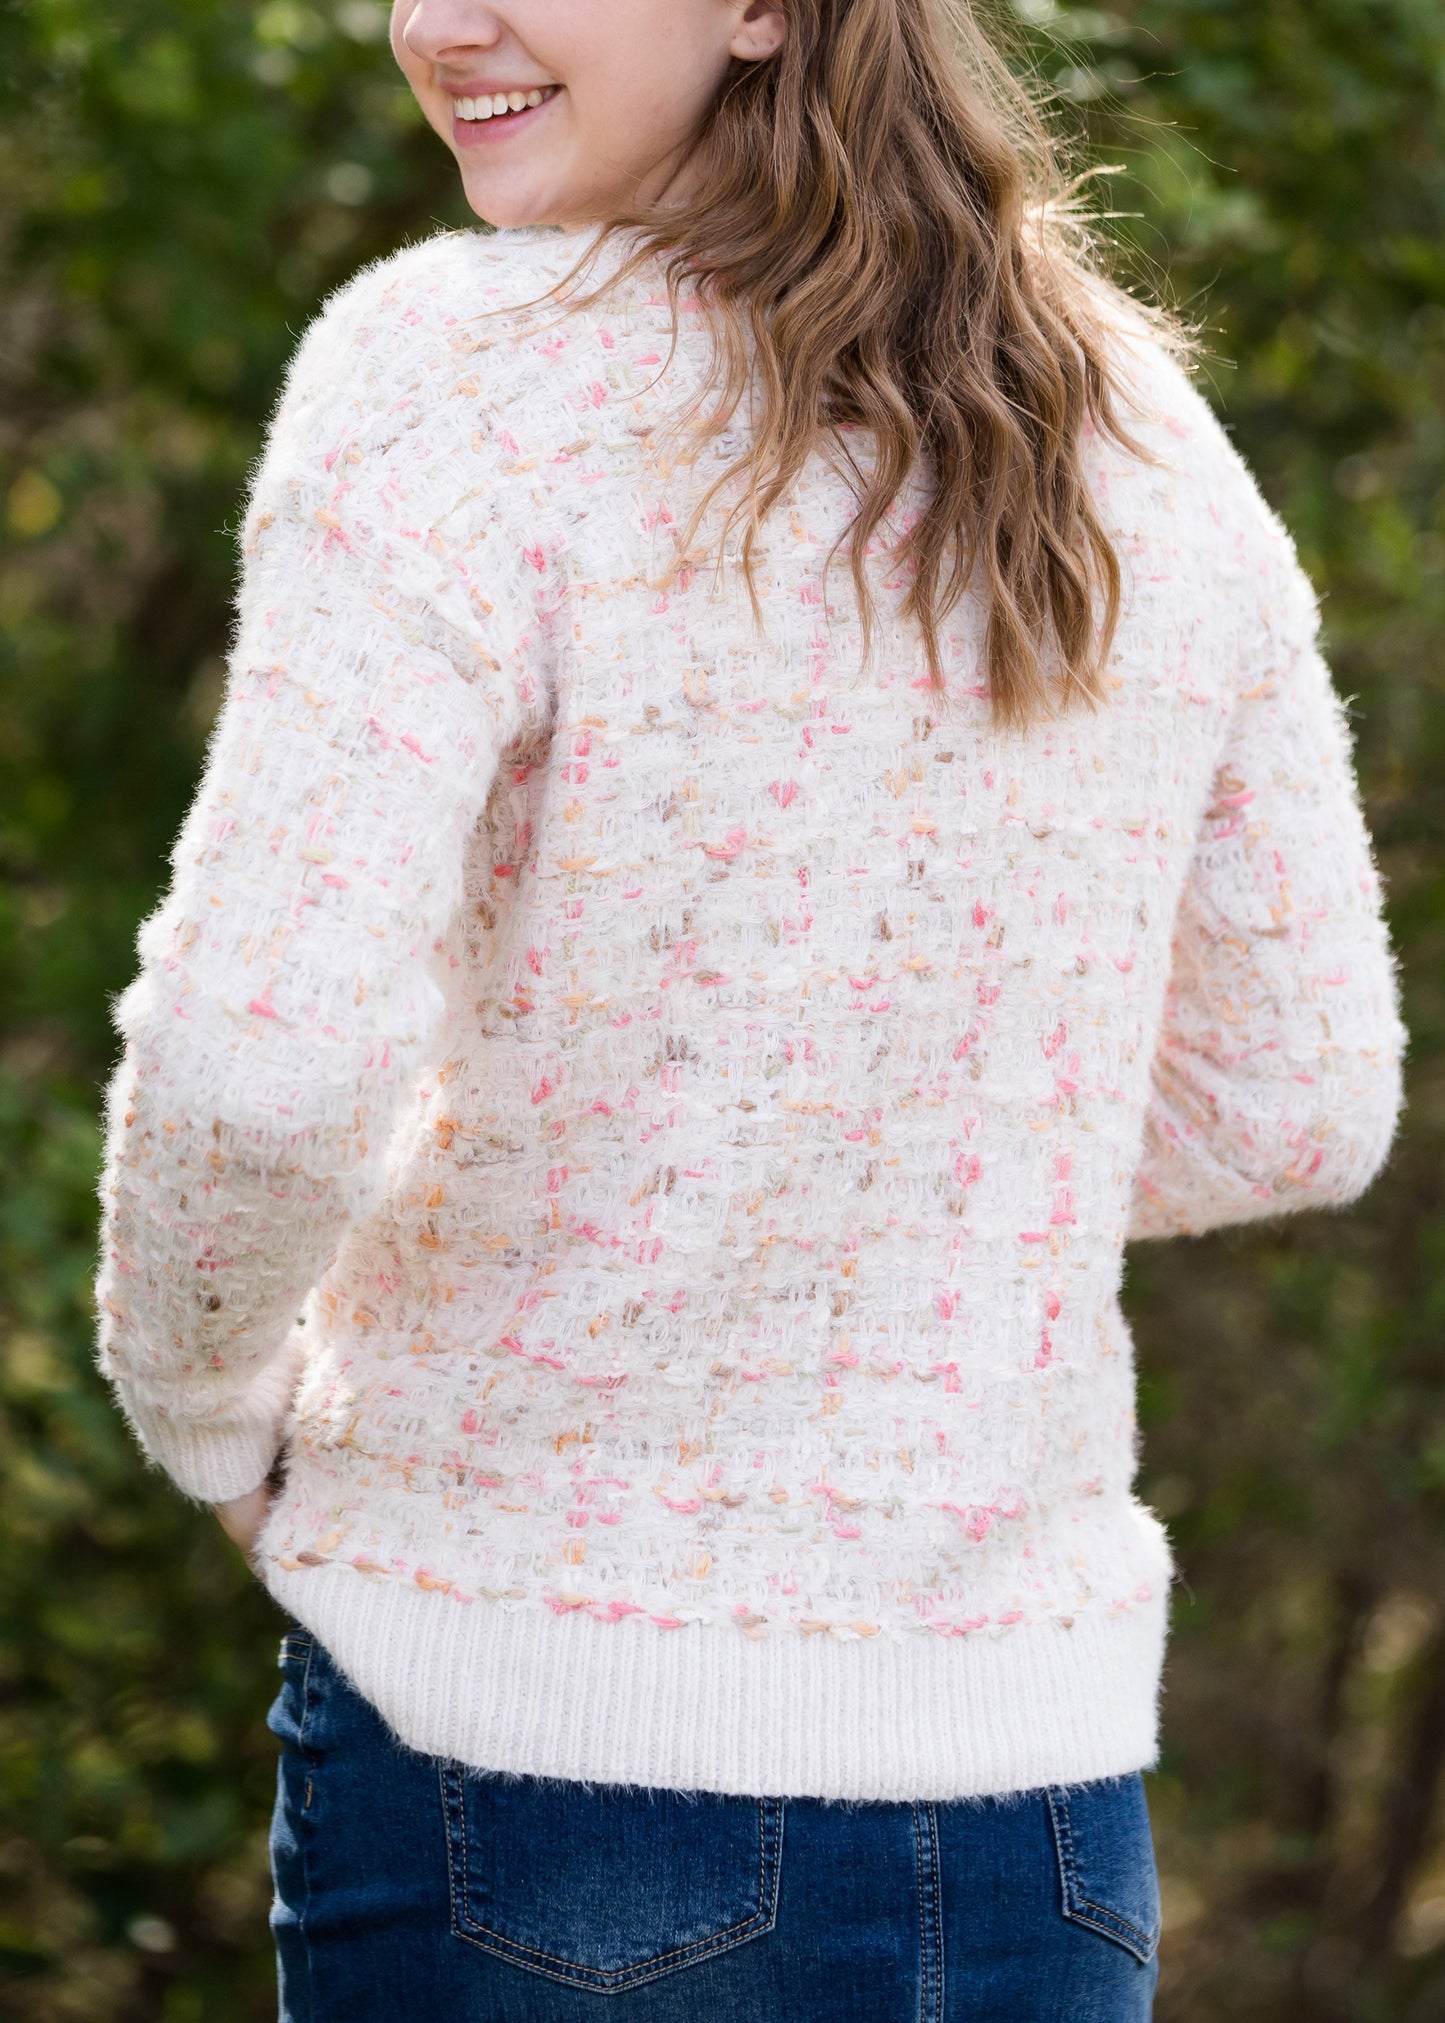 Tweed Textured Cozy Sweater - FINAL SALE Tops